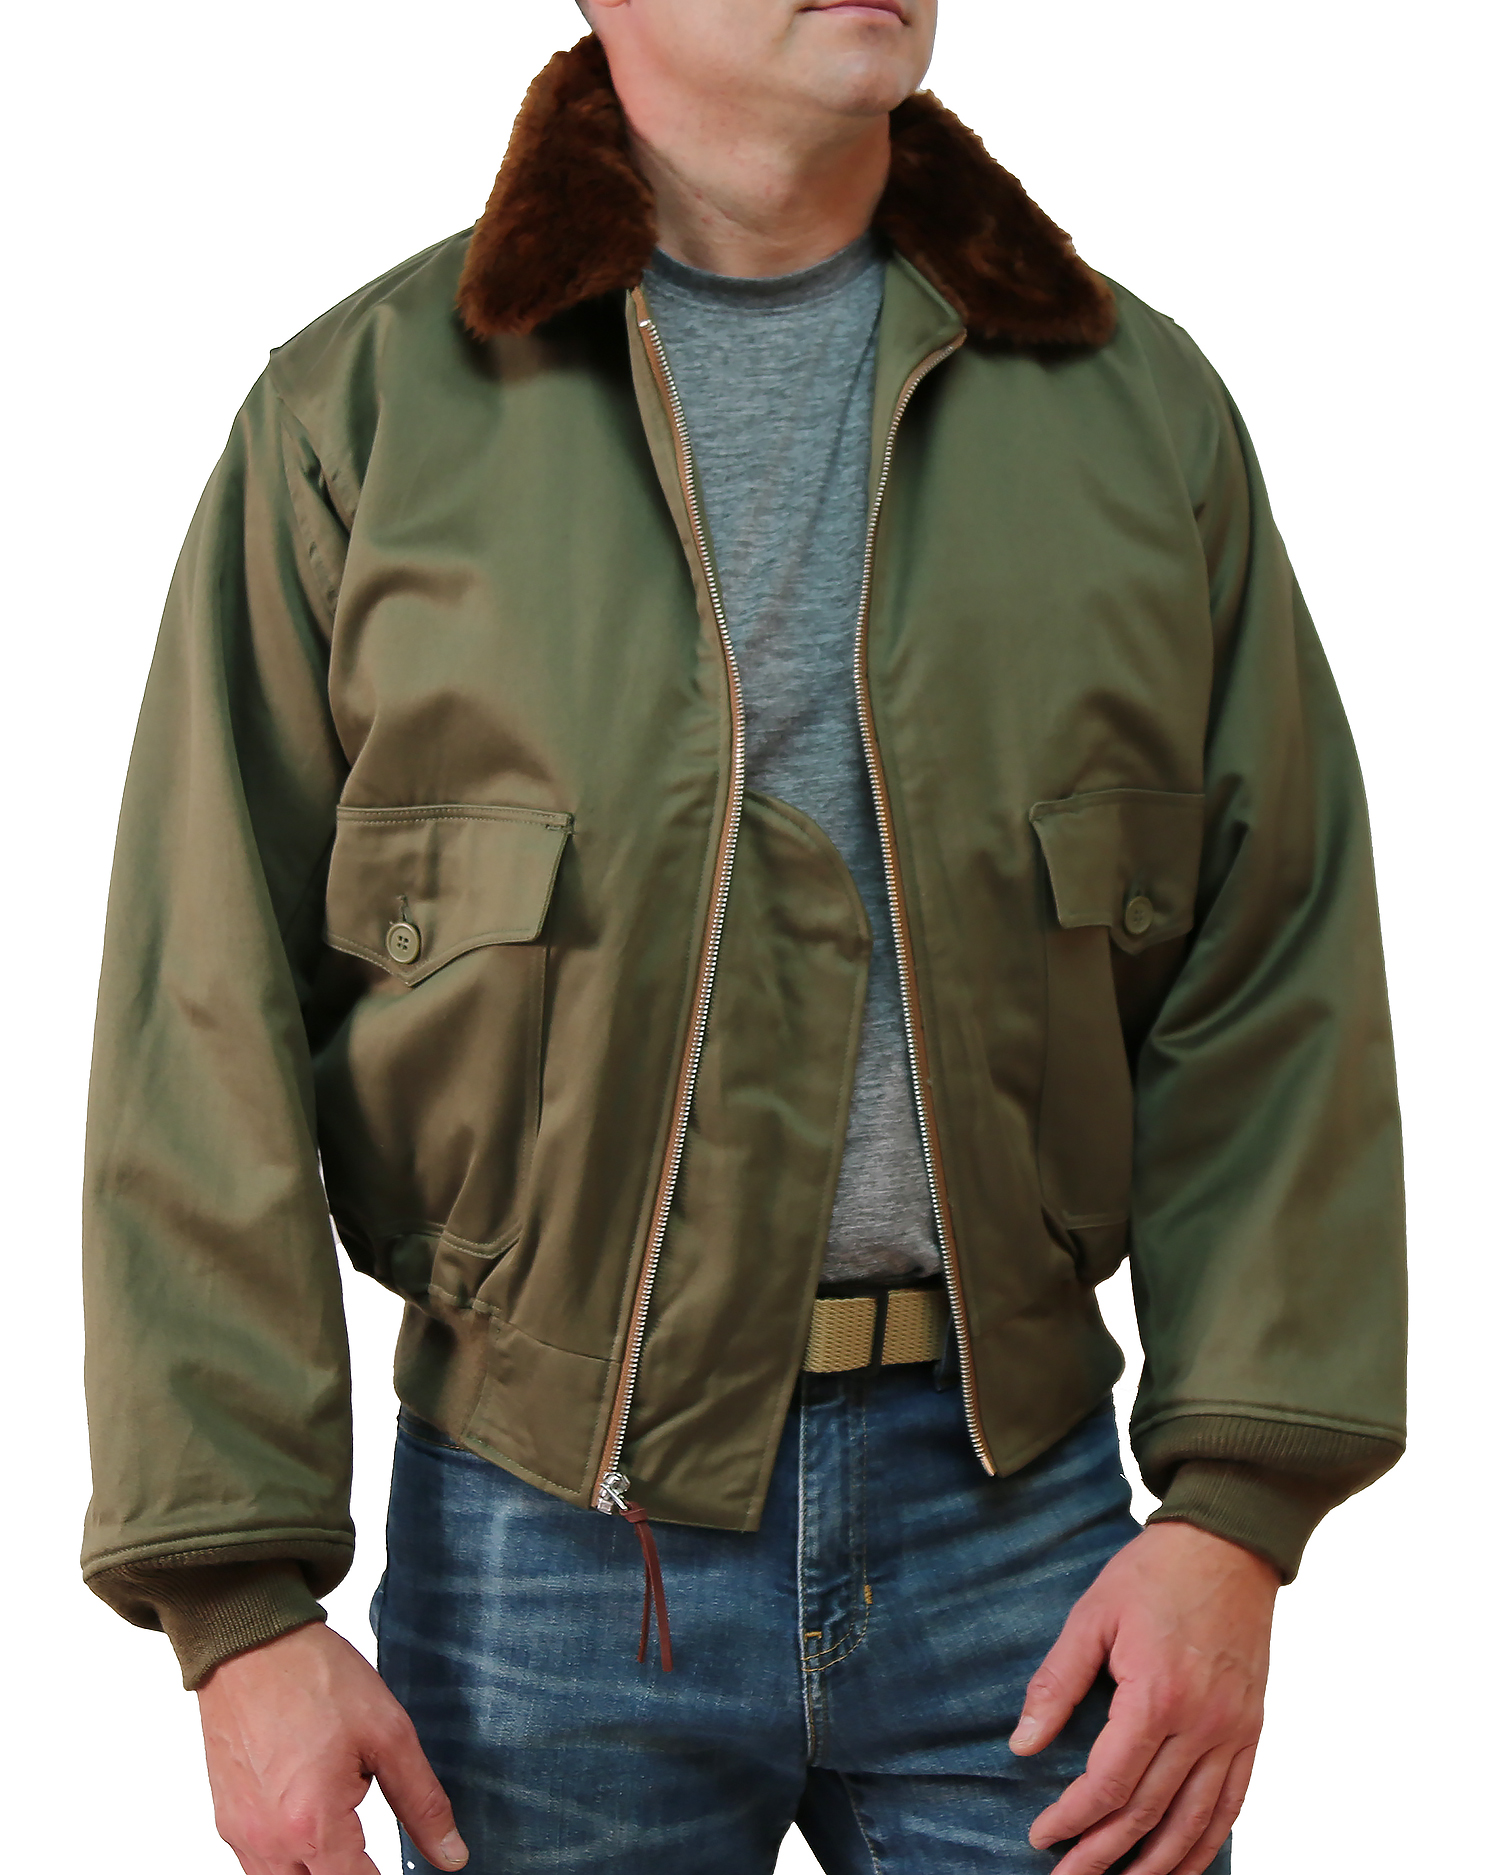 https://blog.atthefront.com/us_images/uni/b10-jacket-wear-front.jpg